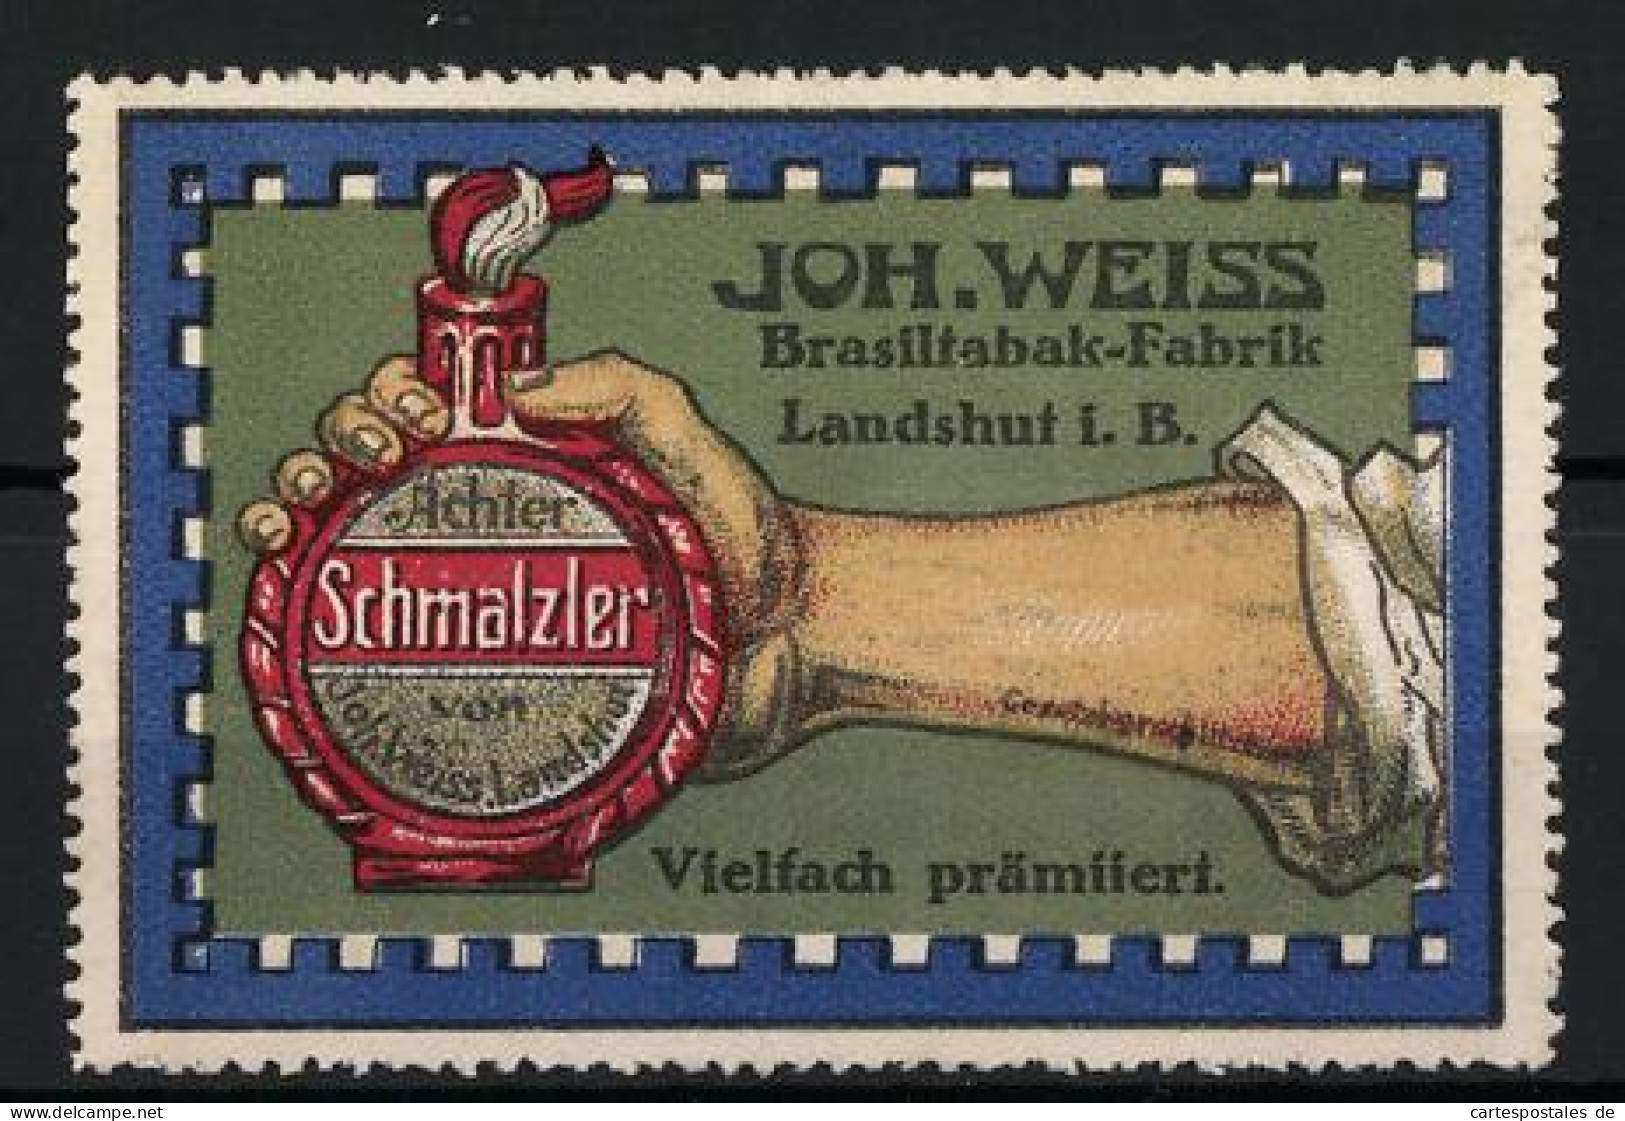 Reklamemarke Schmalzler, Brasiltabak-Fabrik Joh. Weiss, Landshut I. B., Hand Hält Eine Flasche  - Cinderellas